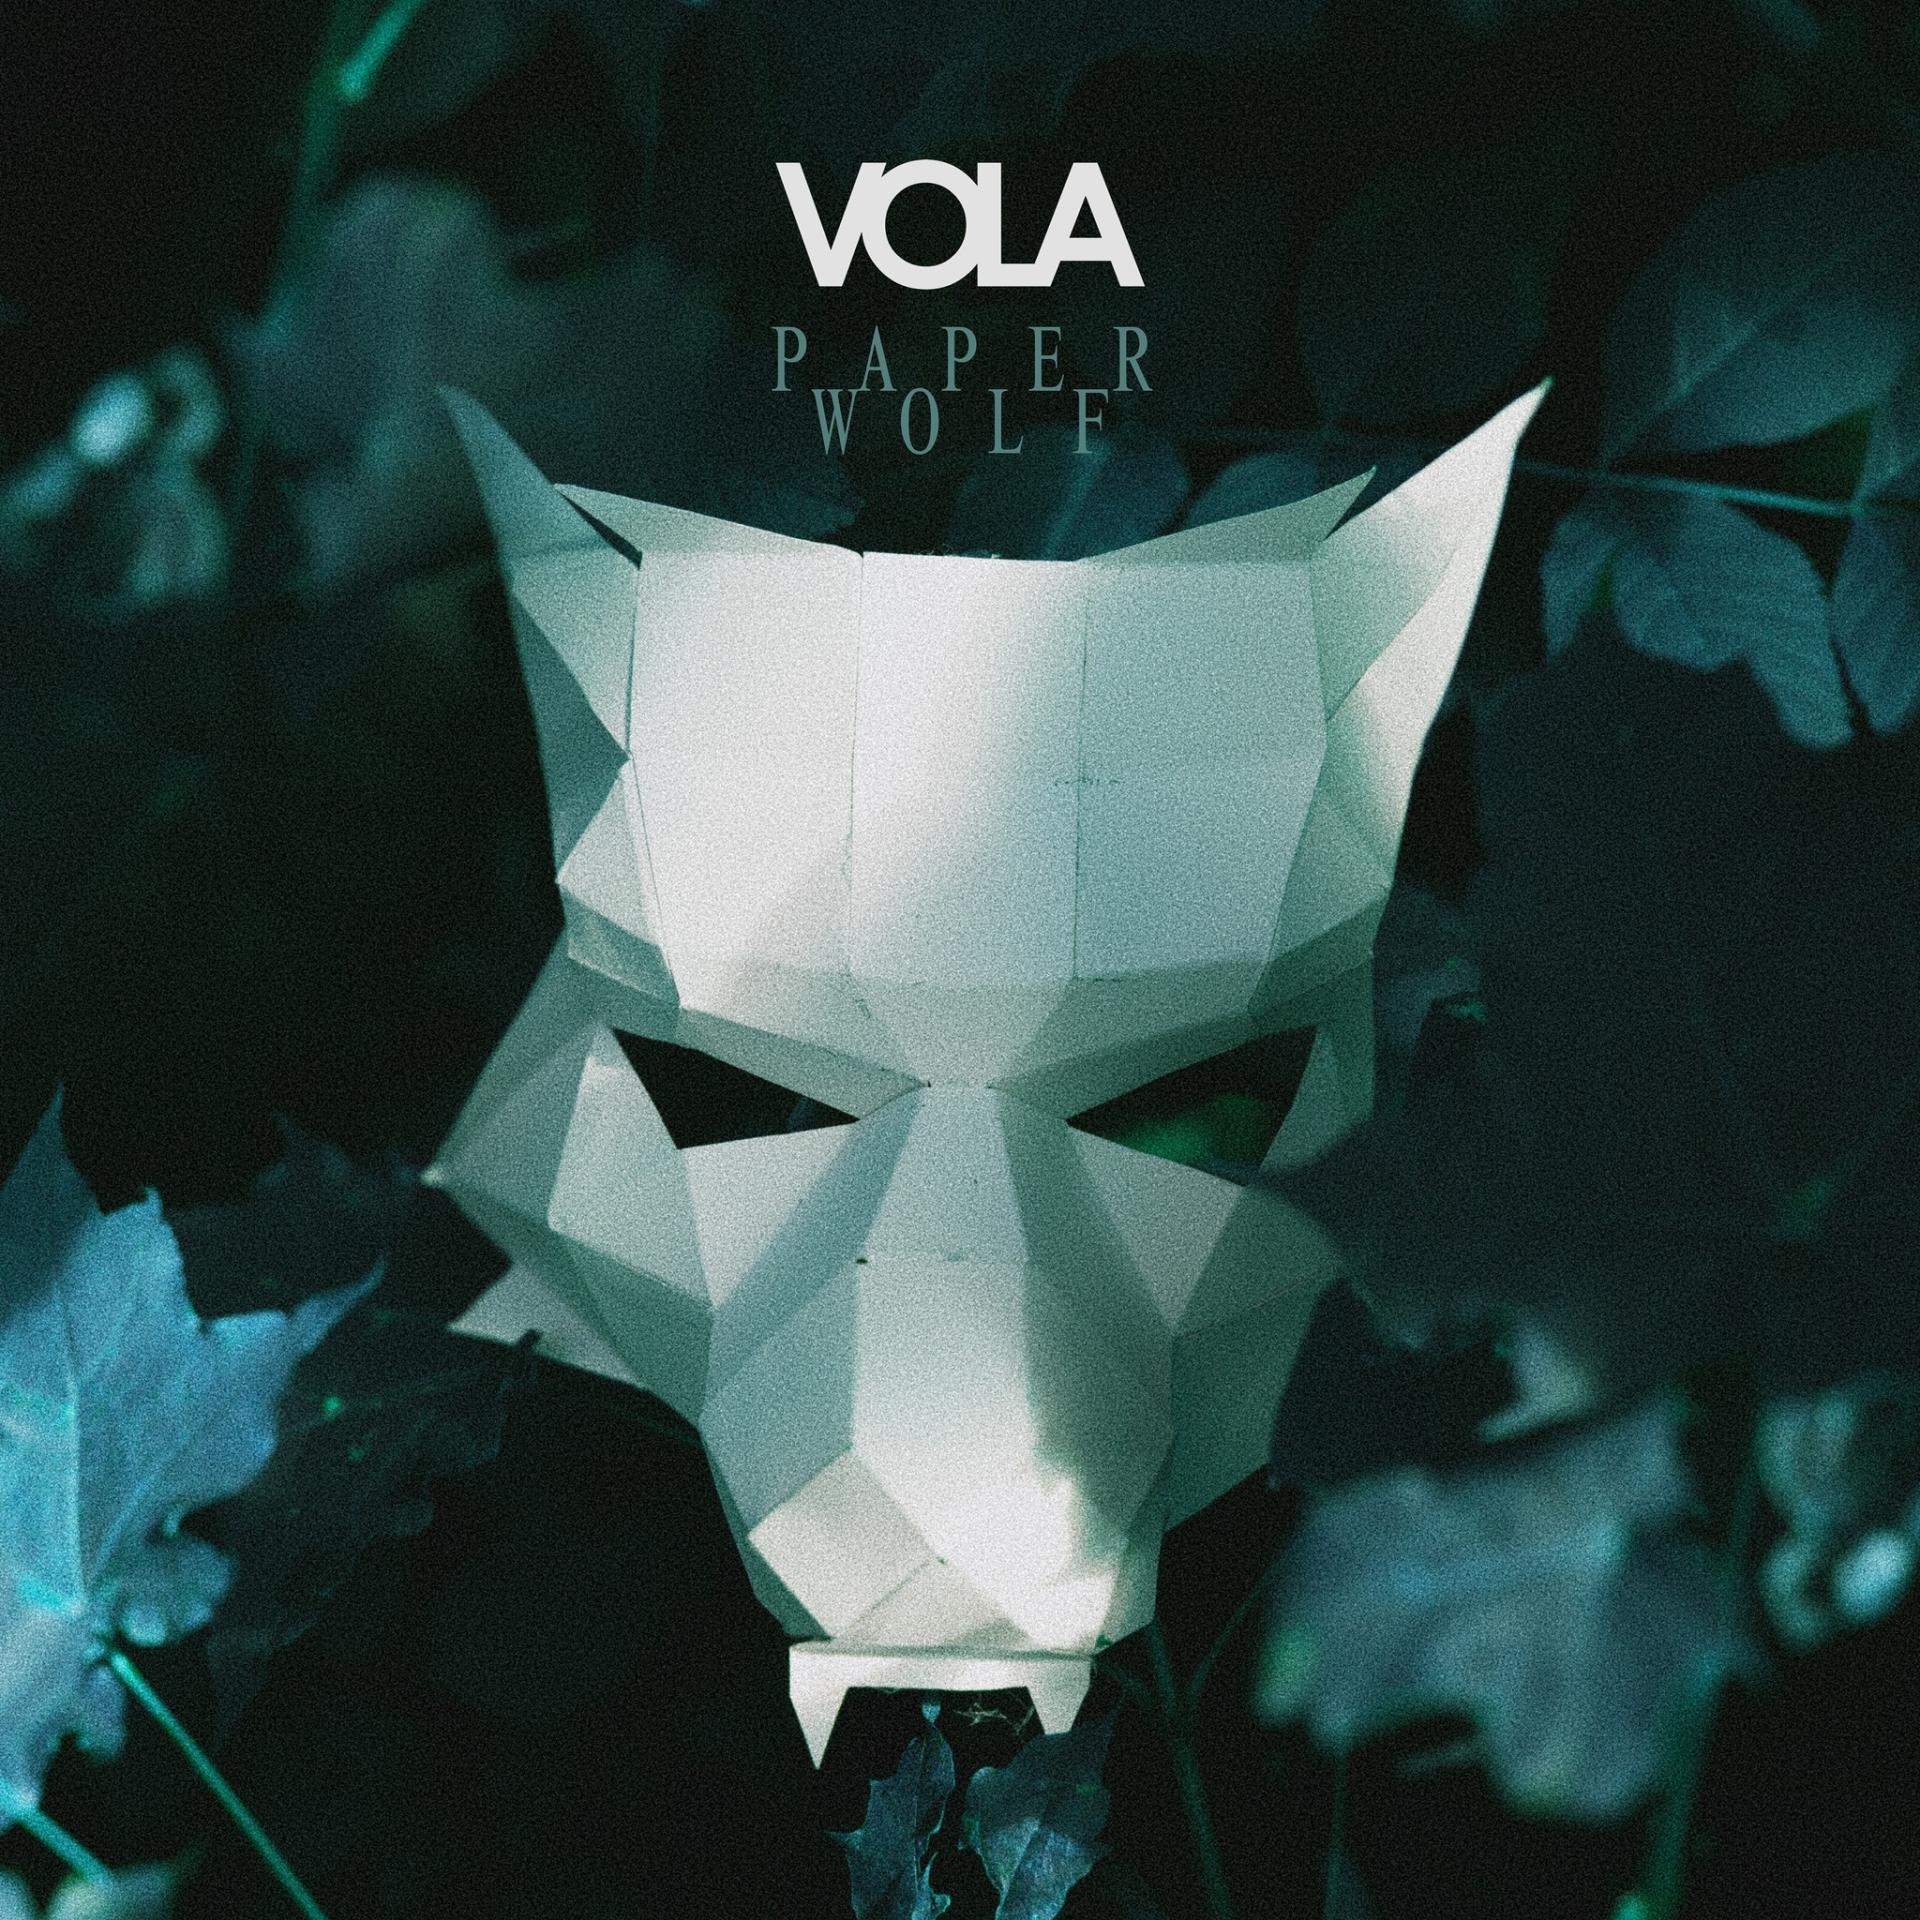 Vola paper wolf